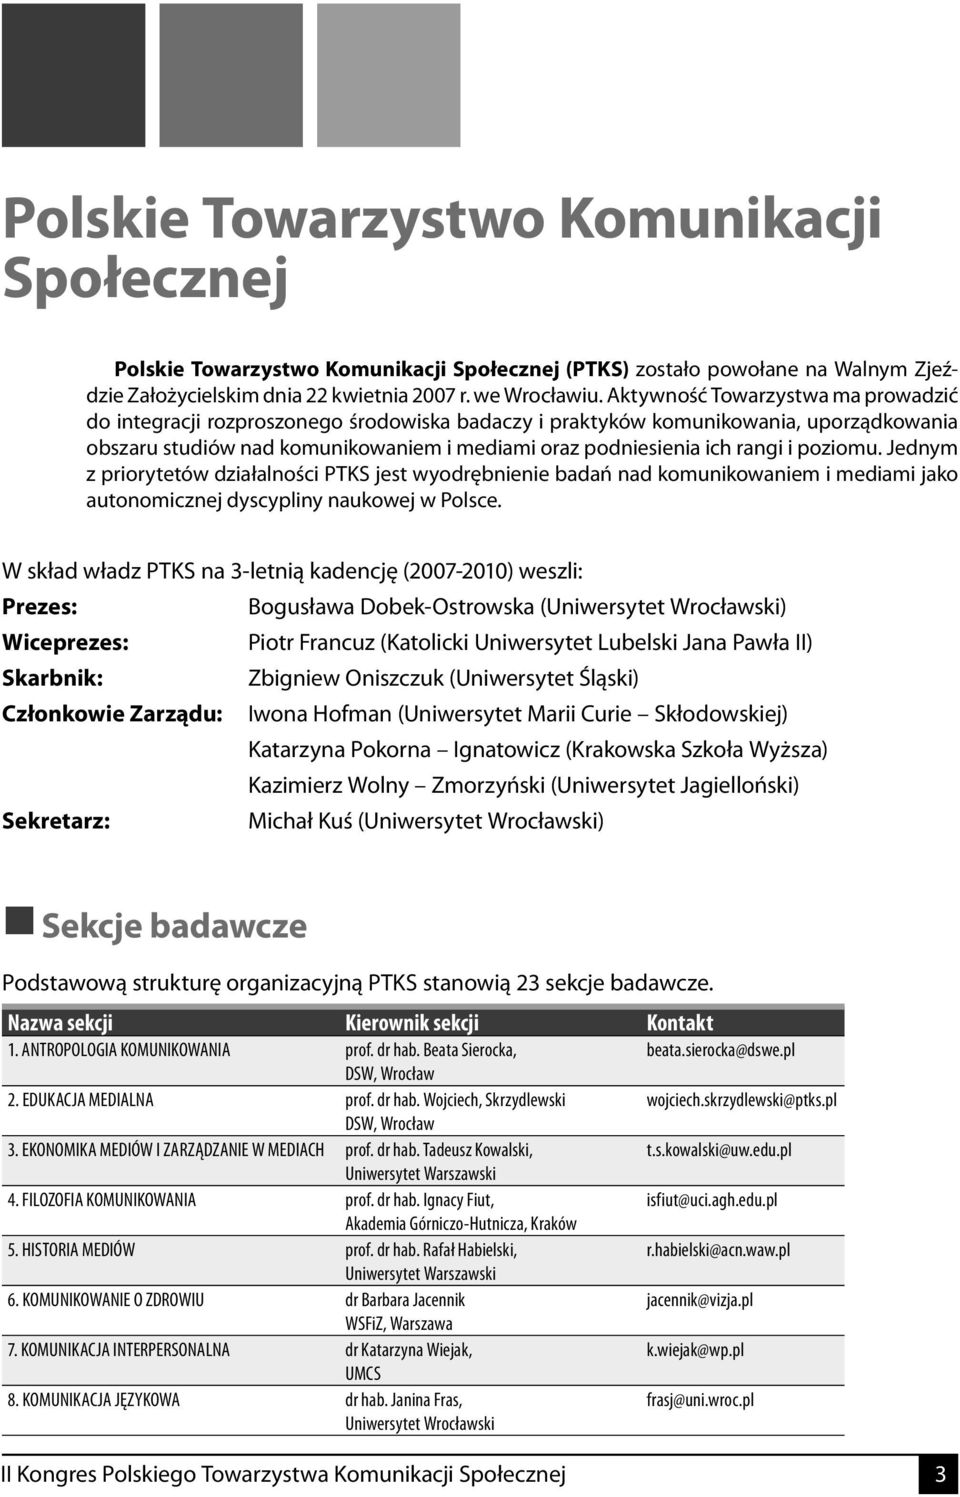 poziomu. Jednym z priorytetów działalności PTKS jest wyodrębnienie badań nad komunikowaniem i mediami jako autonomicznej dyscypliny naukowej w Polsce.